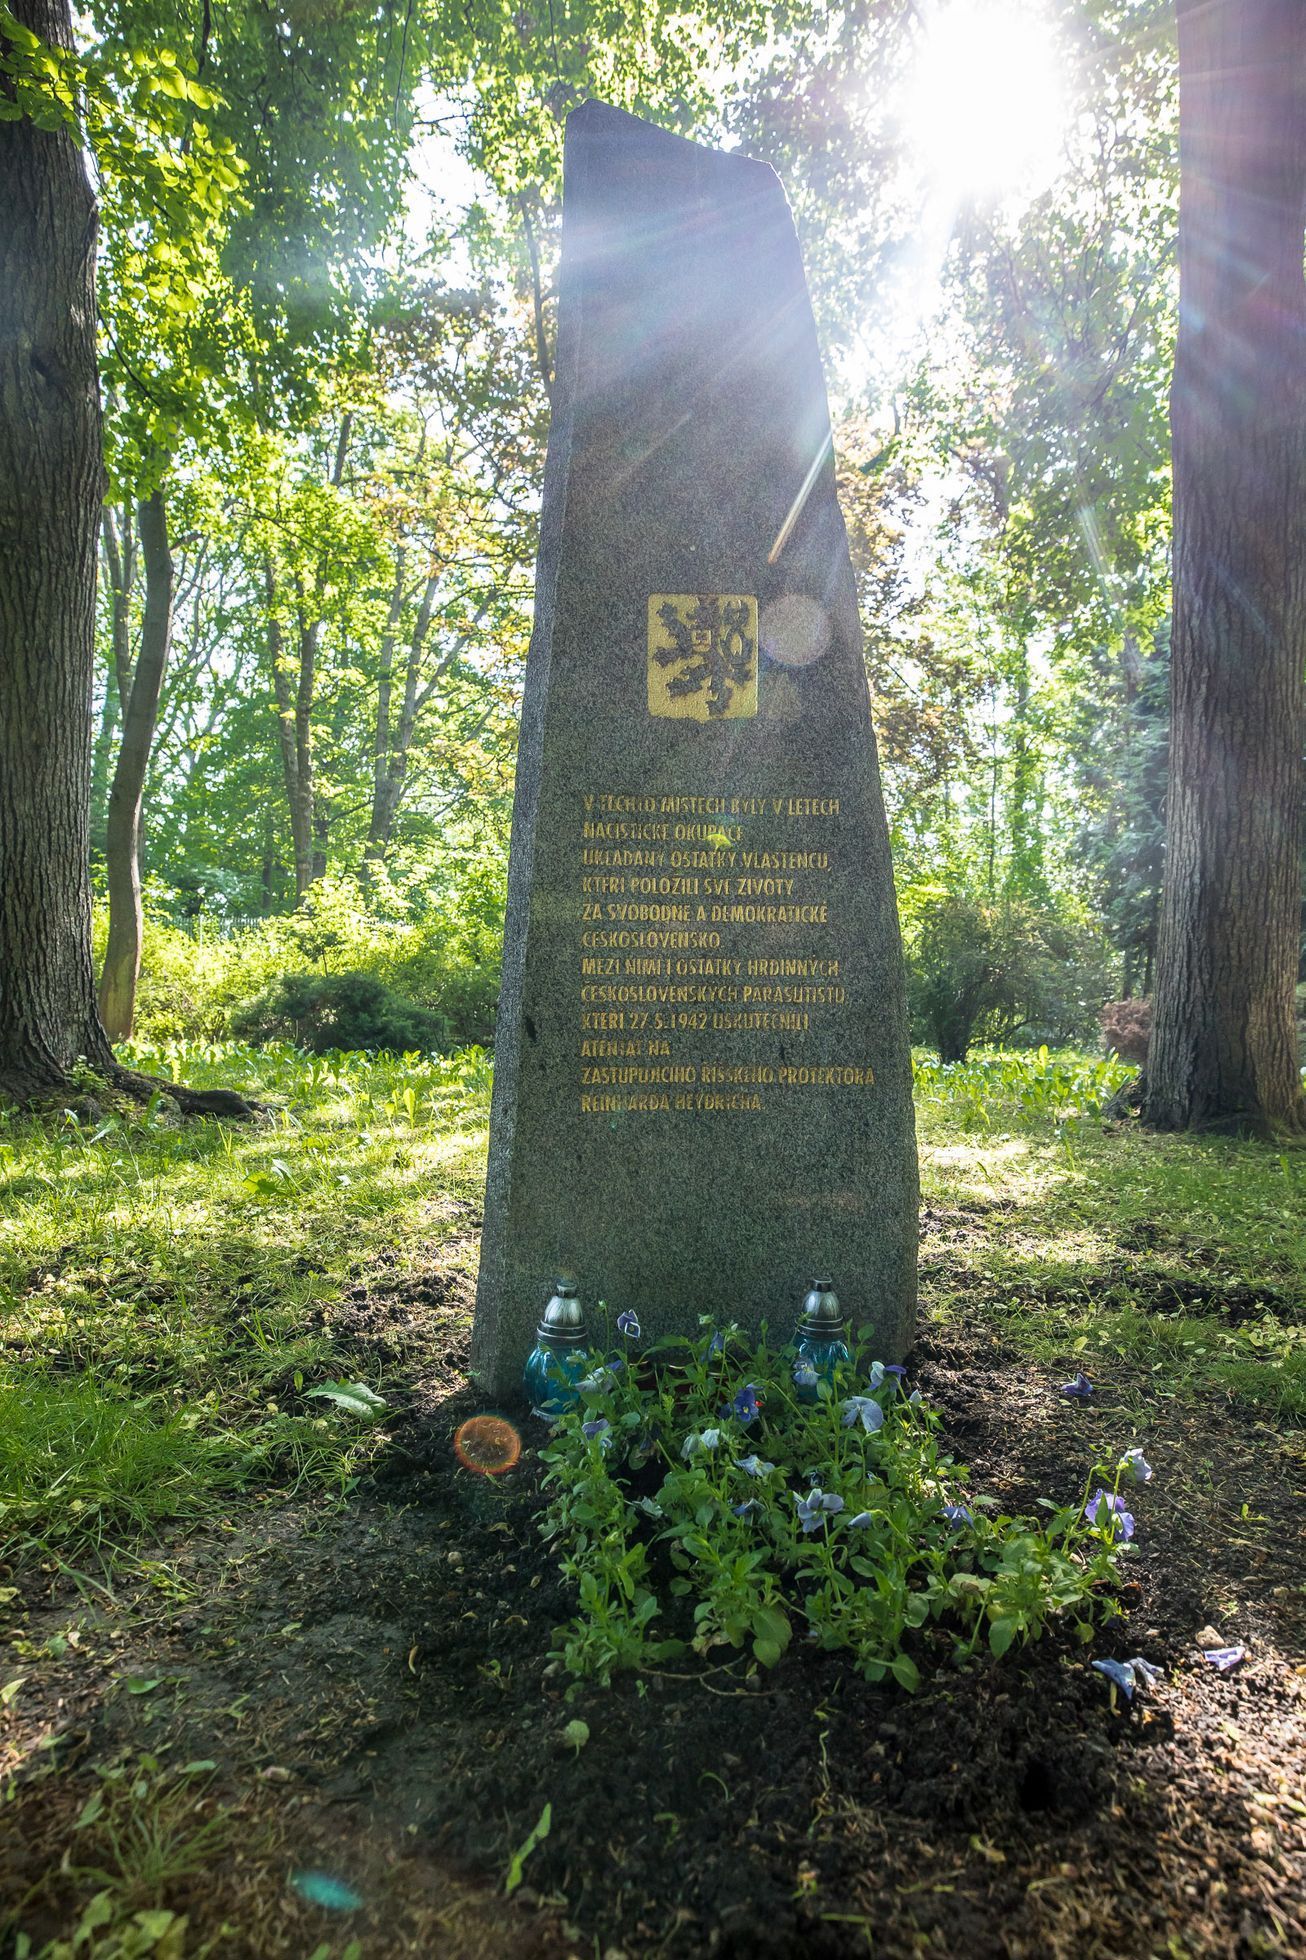 V roce 2008 byl v ďáblickém hřbitově odhalen pomník čs. parašutistům. Na jejich ostatcích za obeliskem však dodnes bují džungle.